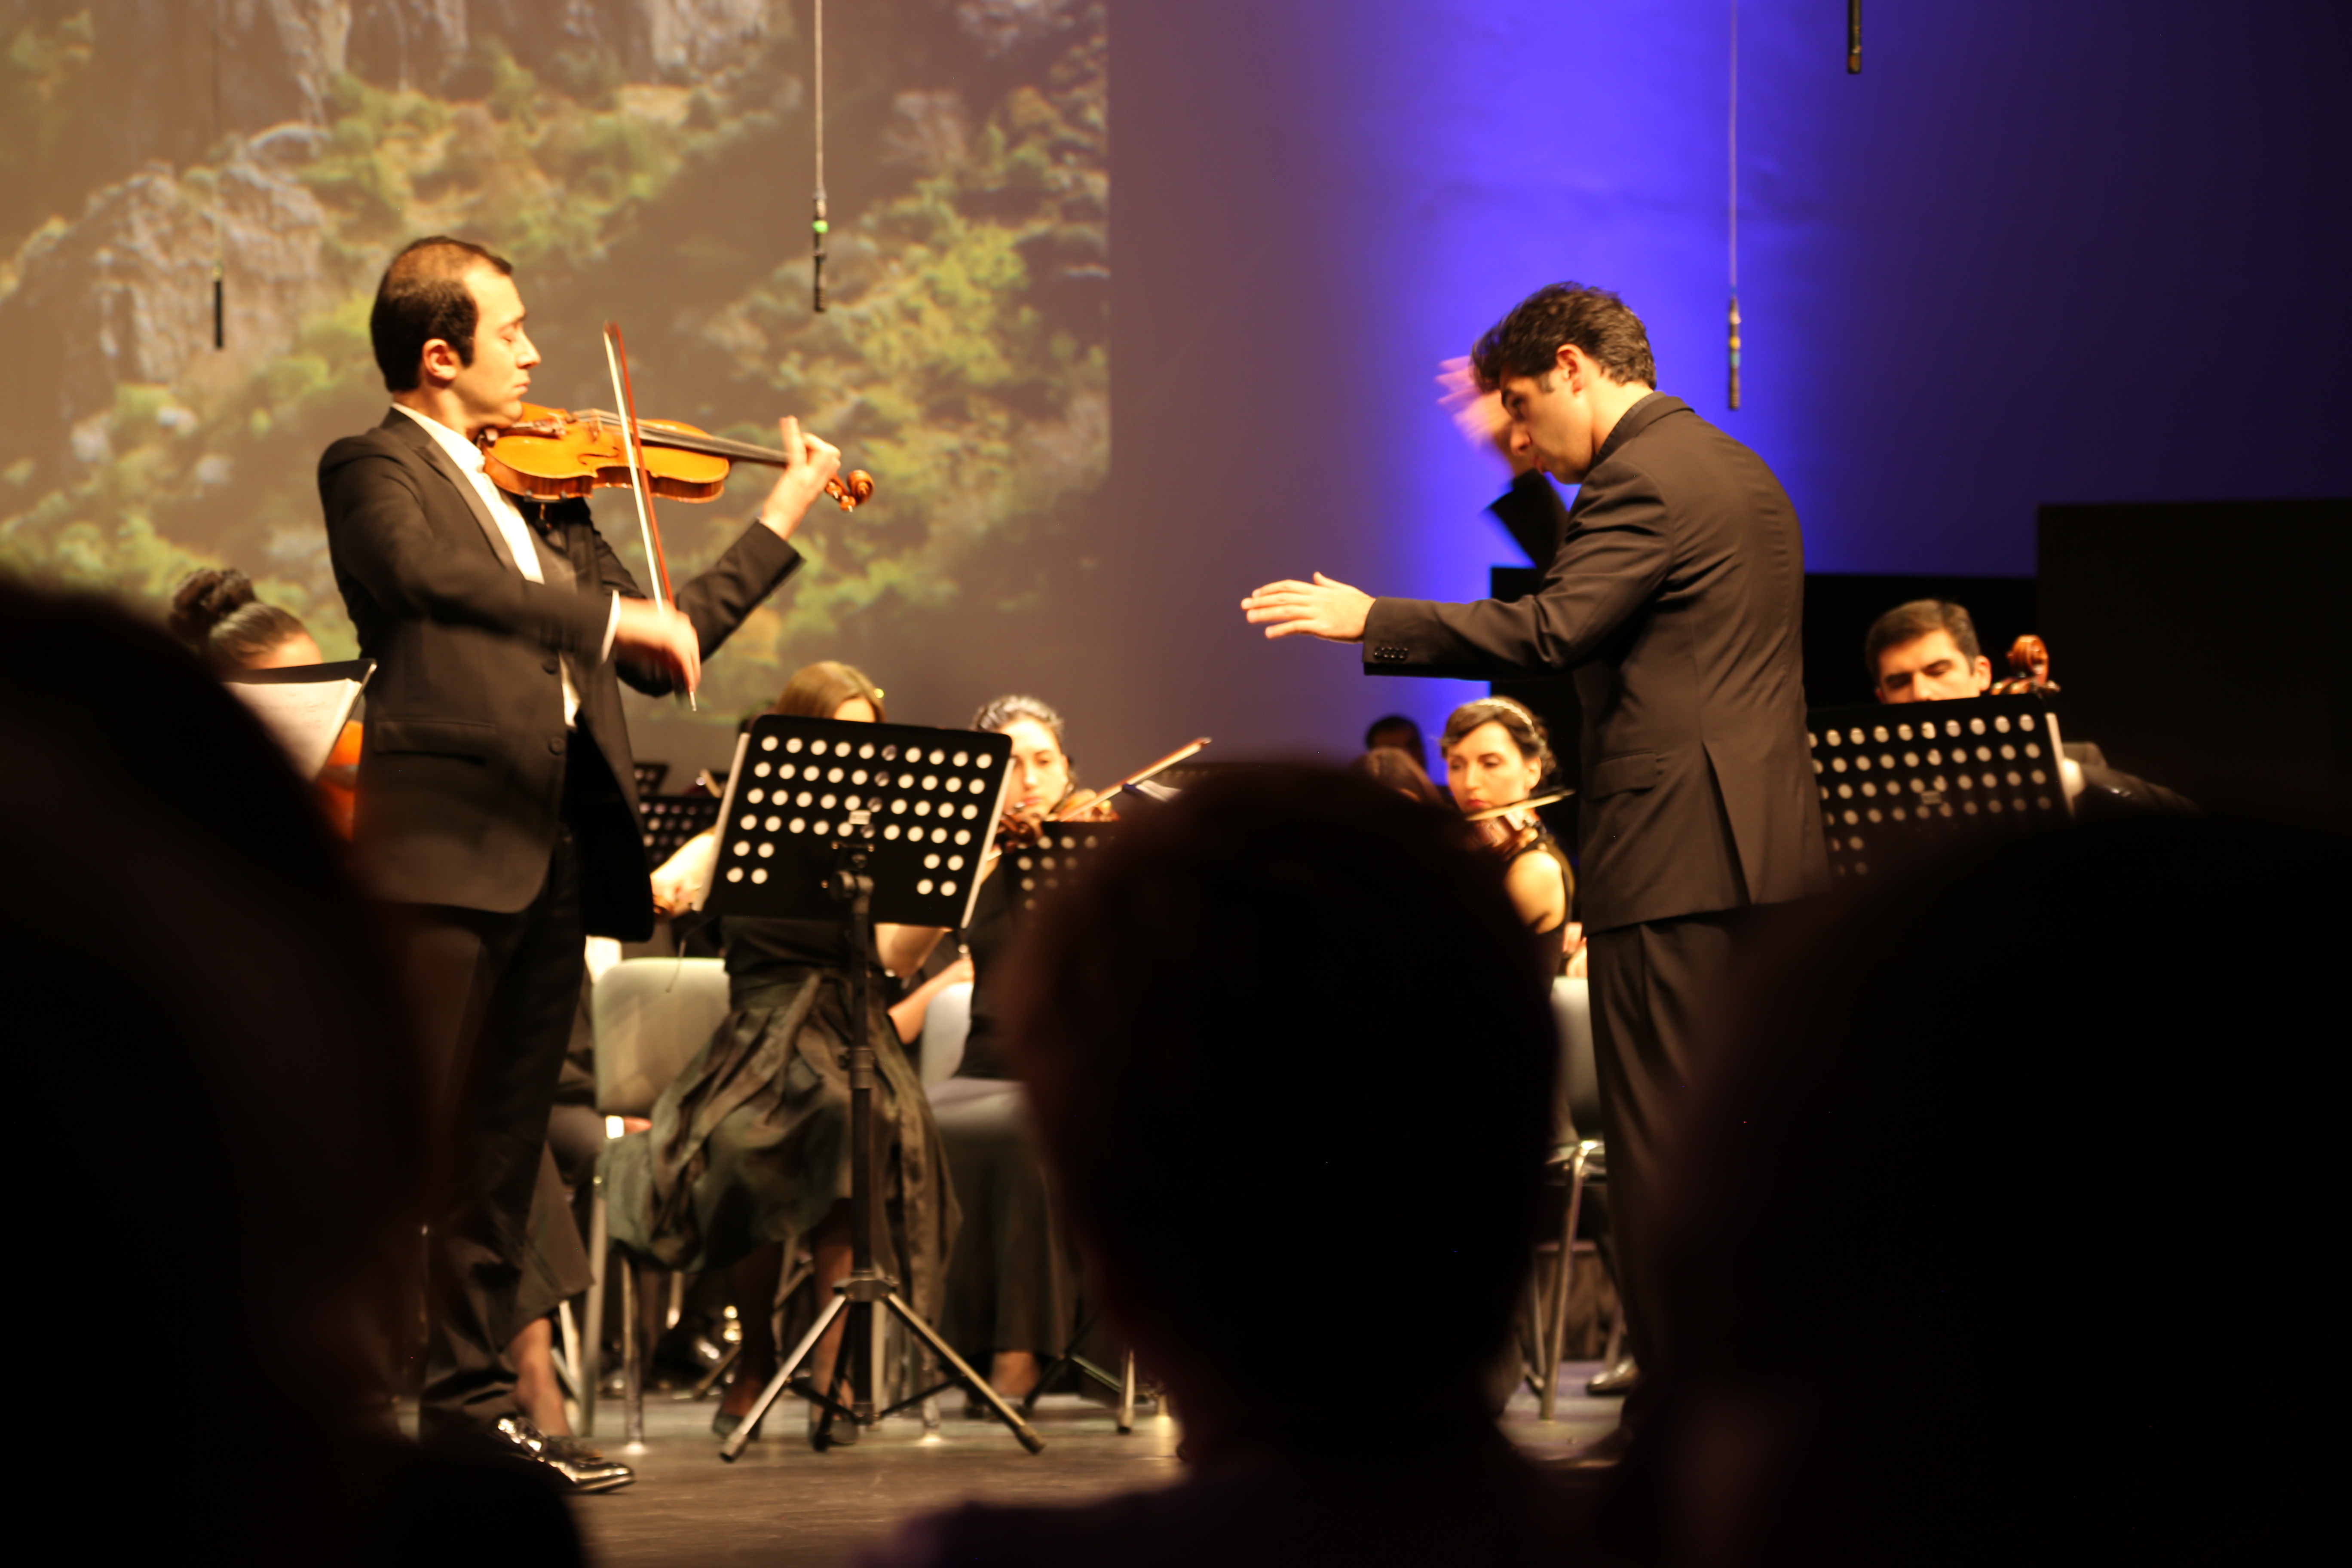 Հայաստանի պետական սիմֆոնիկ նվագախմբի համերգը յուրահատուկ նվեր էր Սոչիի բնակիչներին